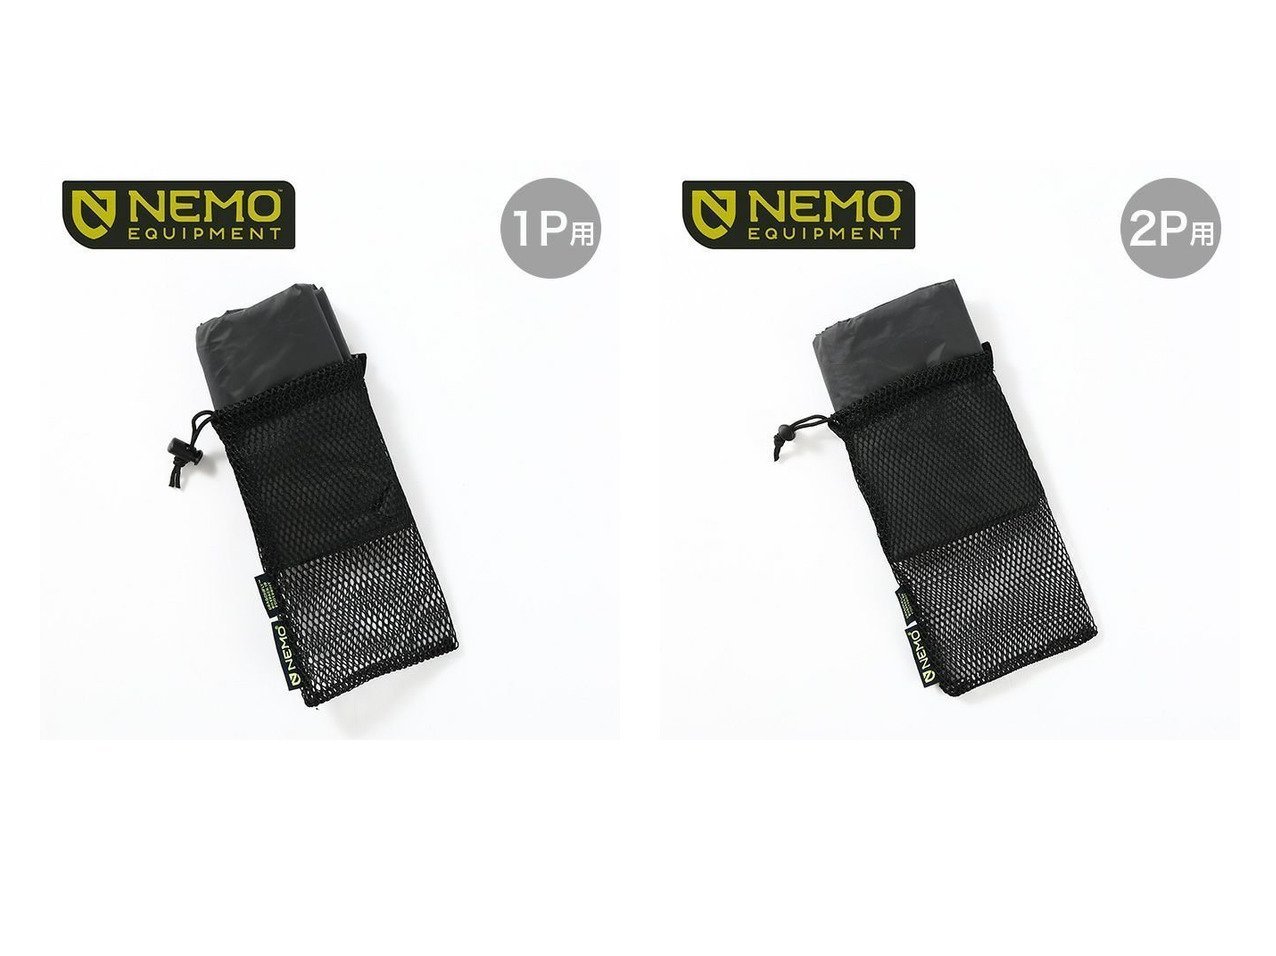 NEMO Equipment/ニーモイクイップメント】のドラゴンフライバイク